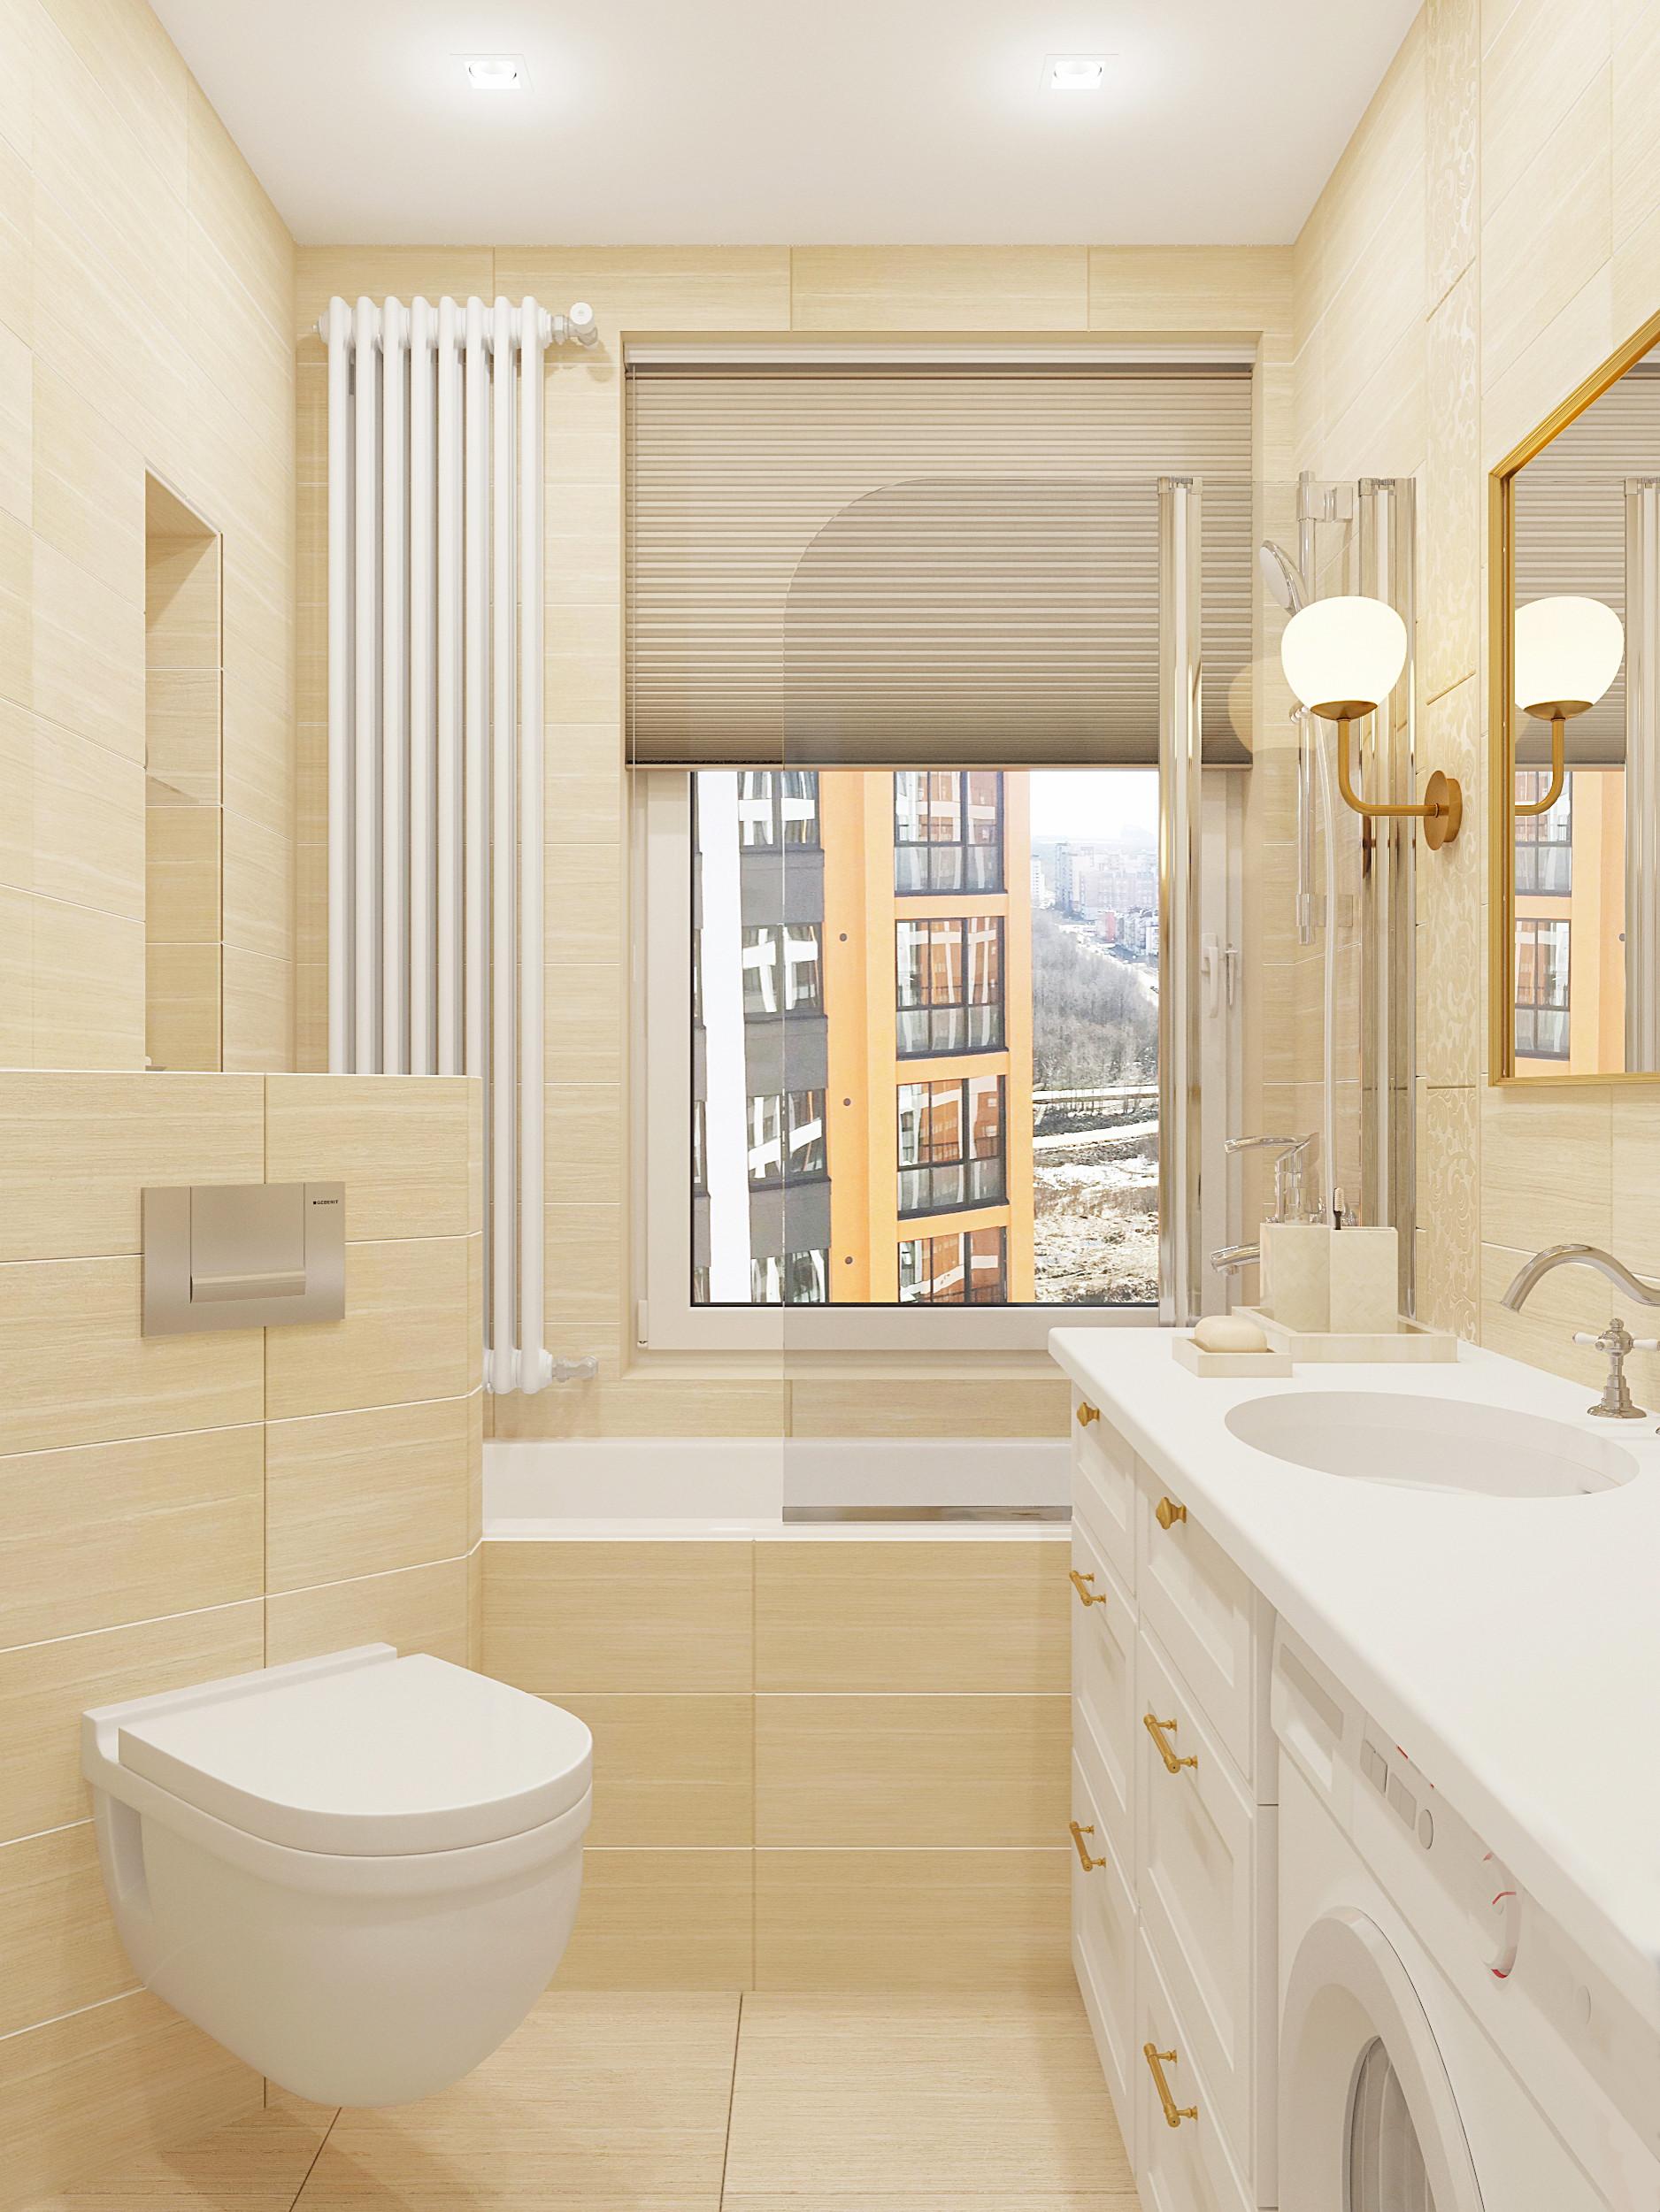 Интерьер ванной с жалюзи, вертикальными жалюзи и дверными жалюзи в современном стиле